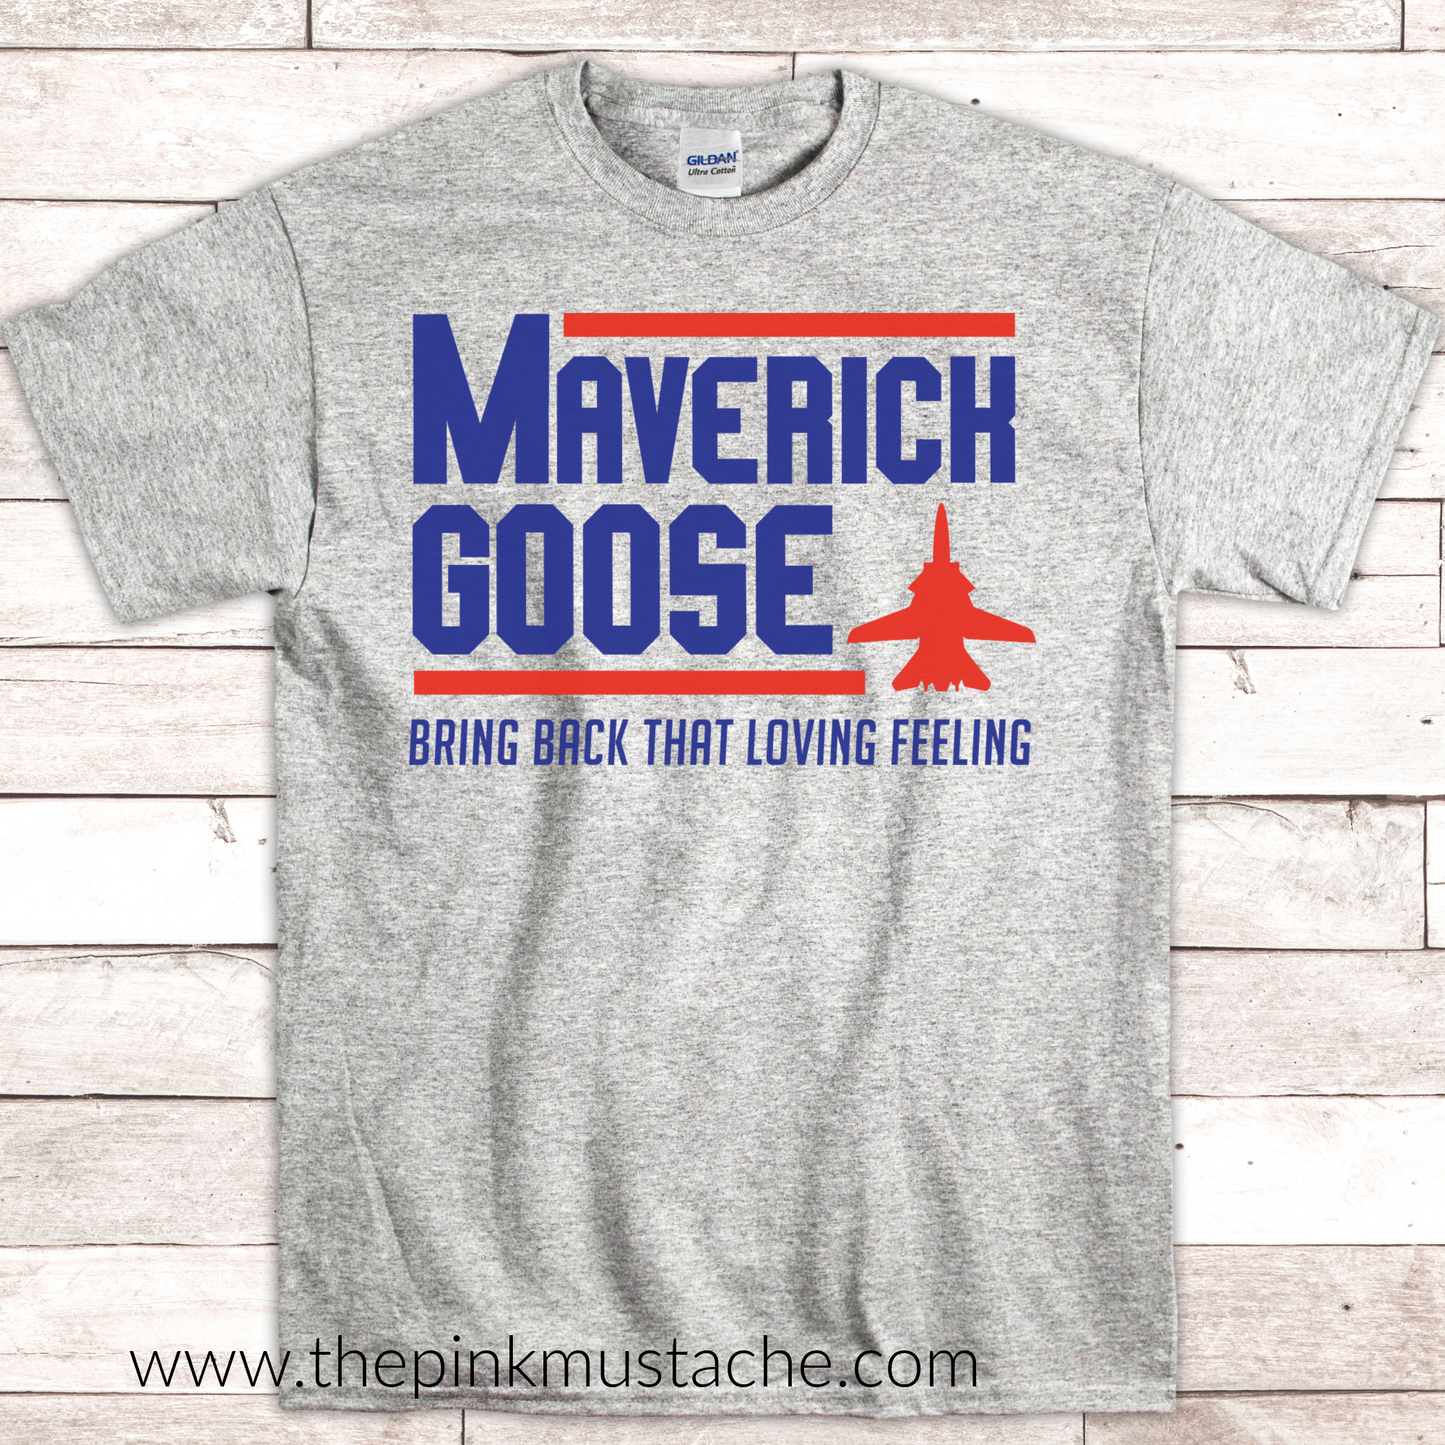 Maverick Goose T-Shirt For President / Top Gun Inspired Tee / Bring Back That Loving Feeling / Maverick Goose 2020